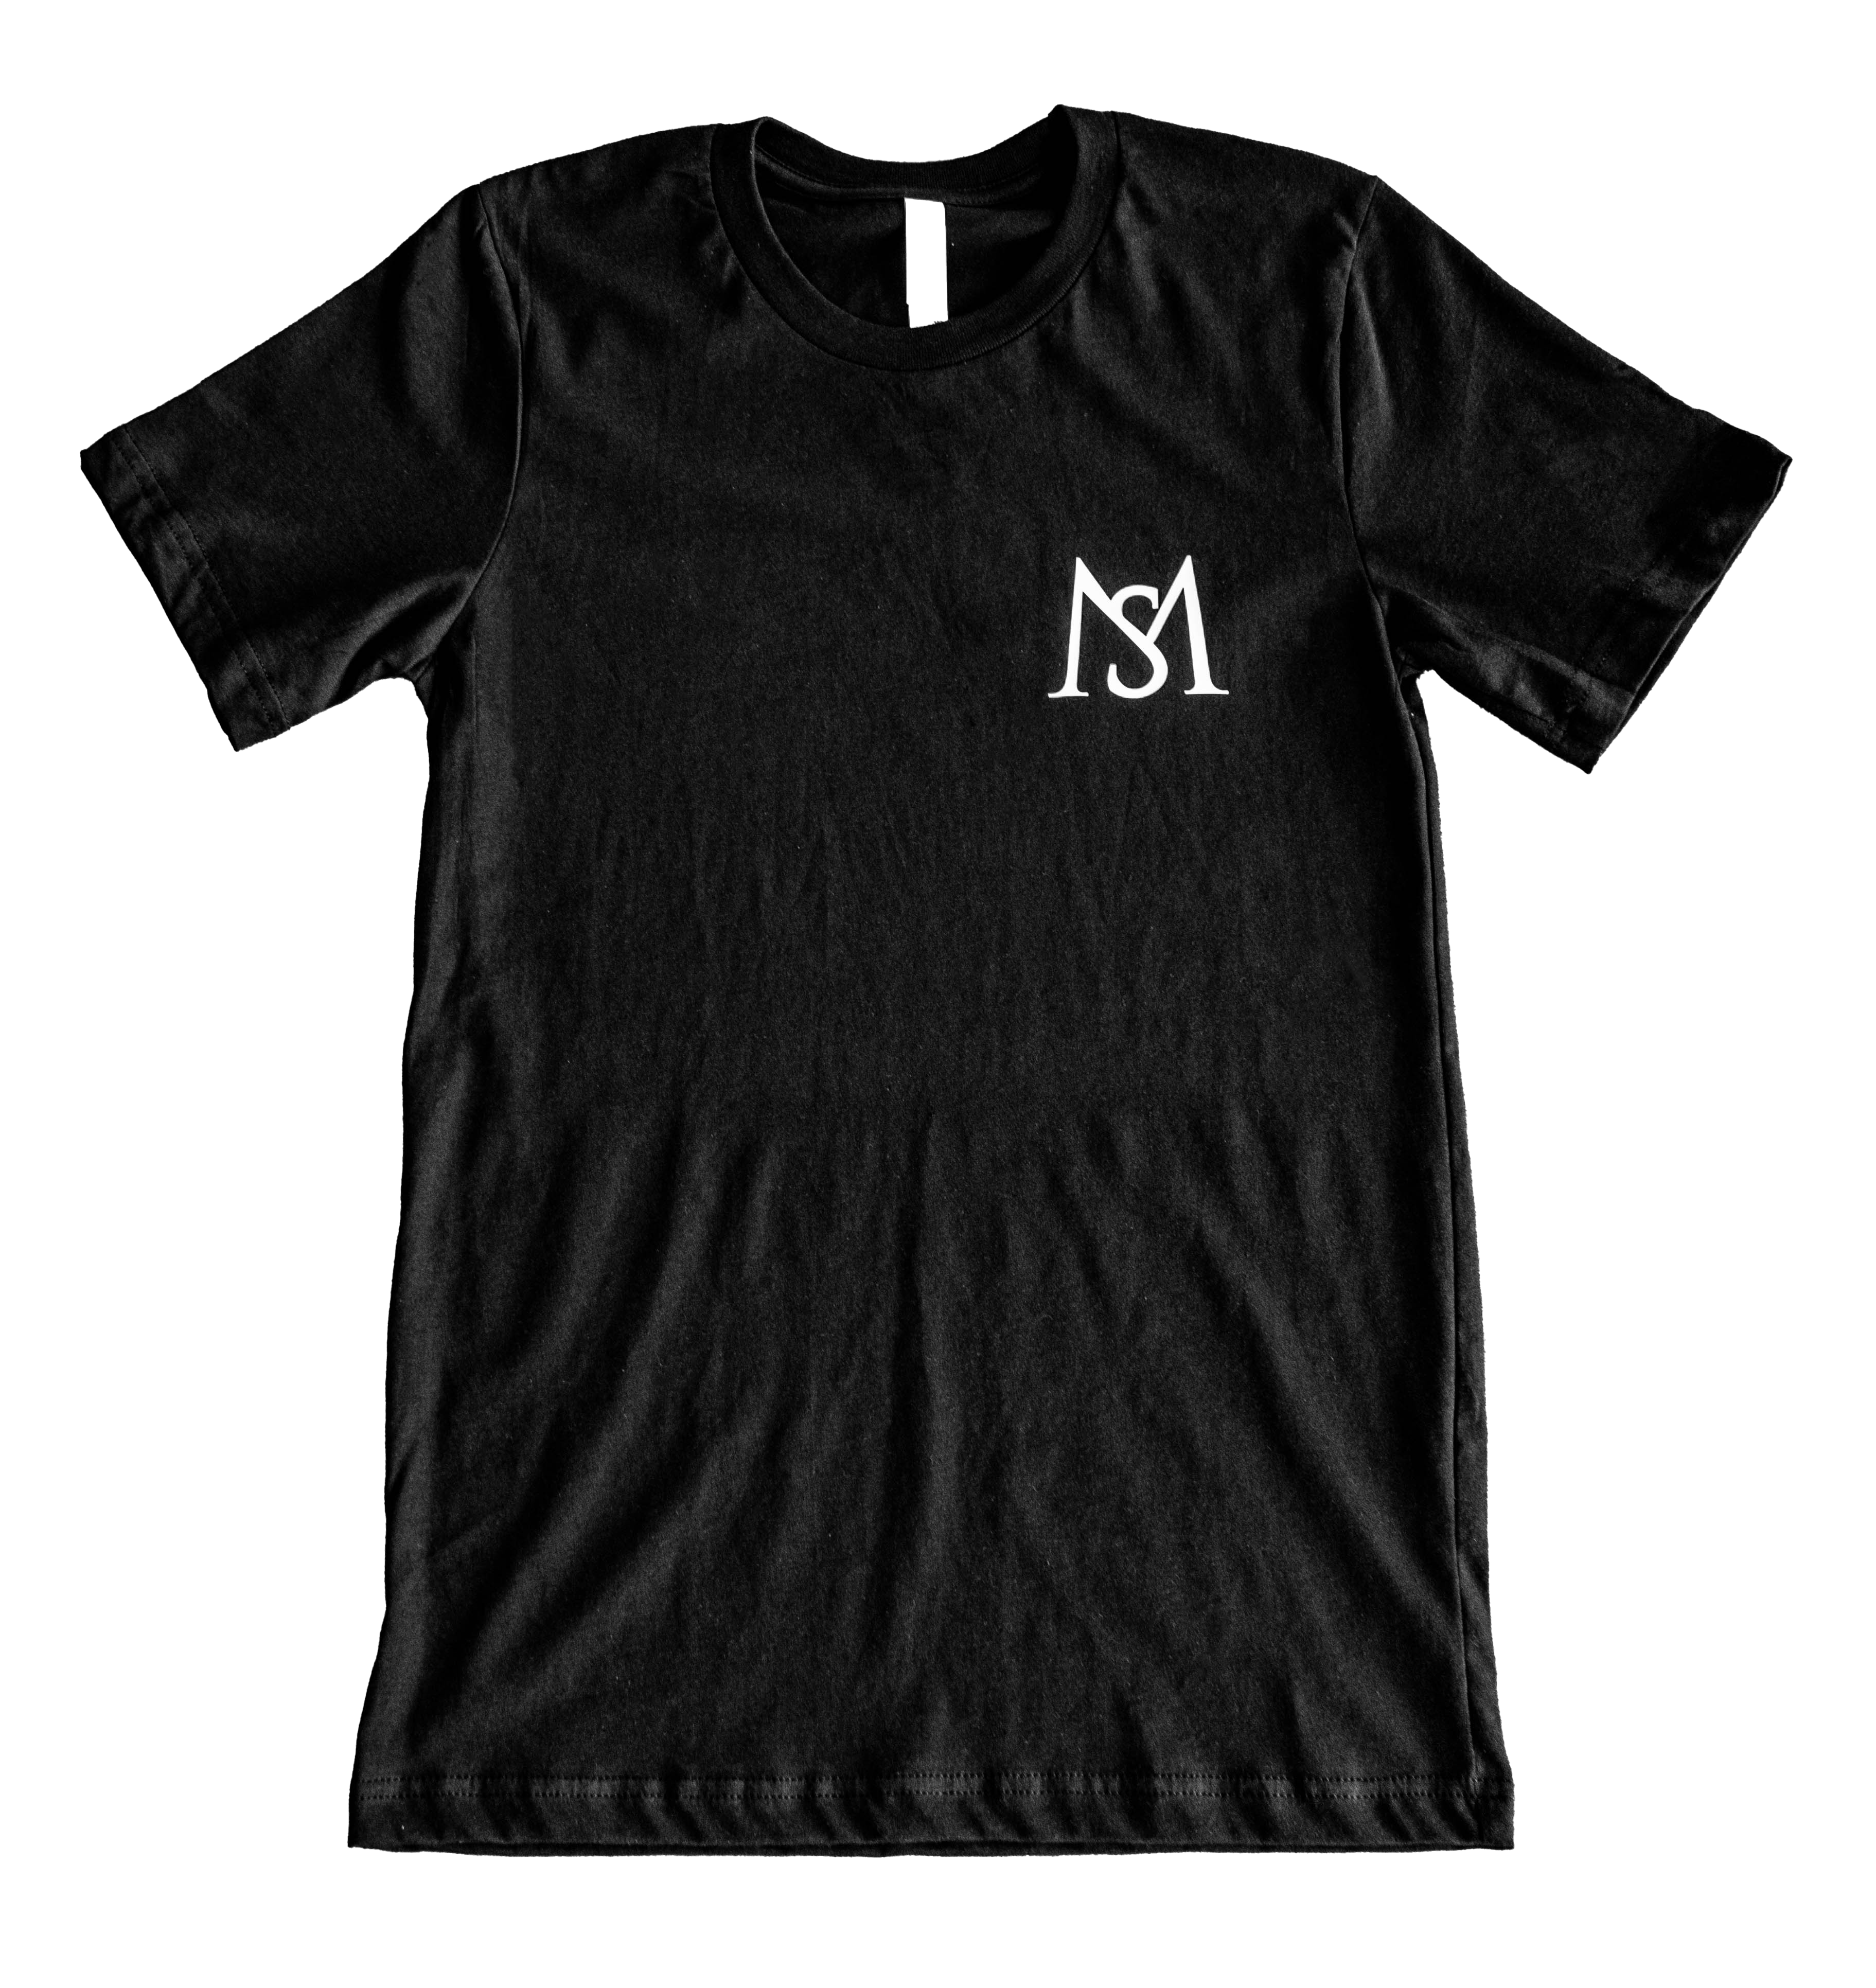 SM Wordmark Unisex T-Shirt